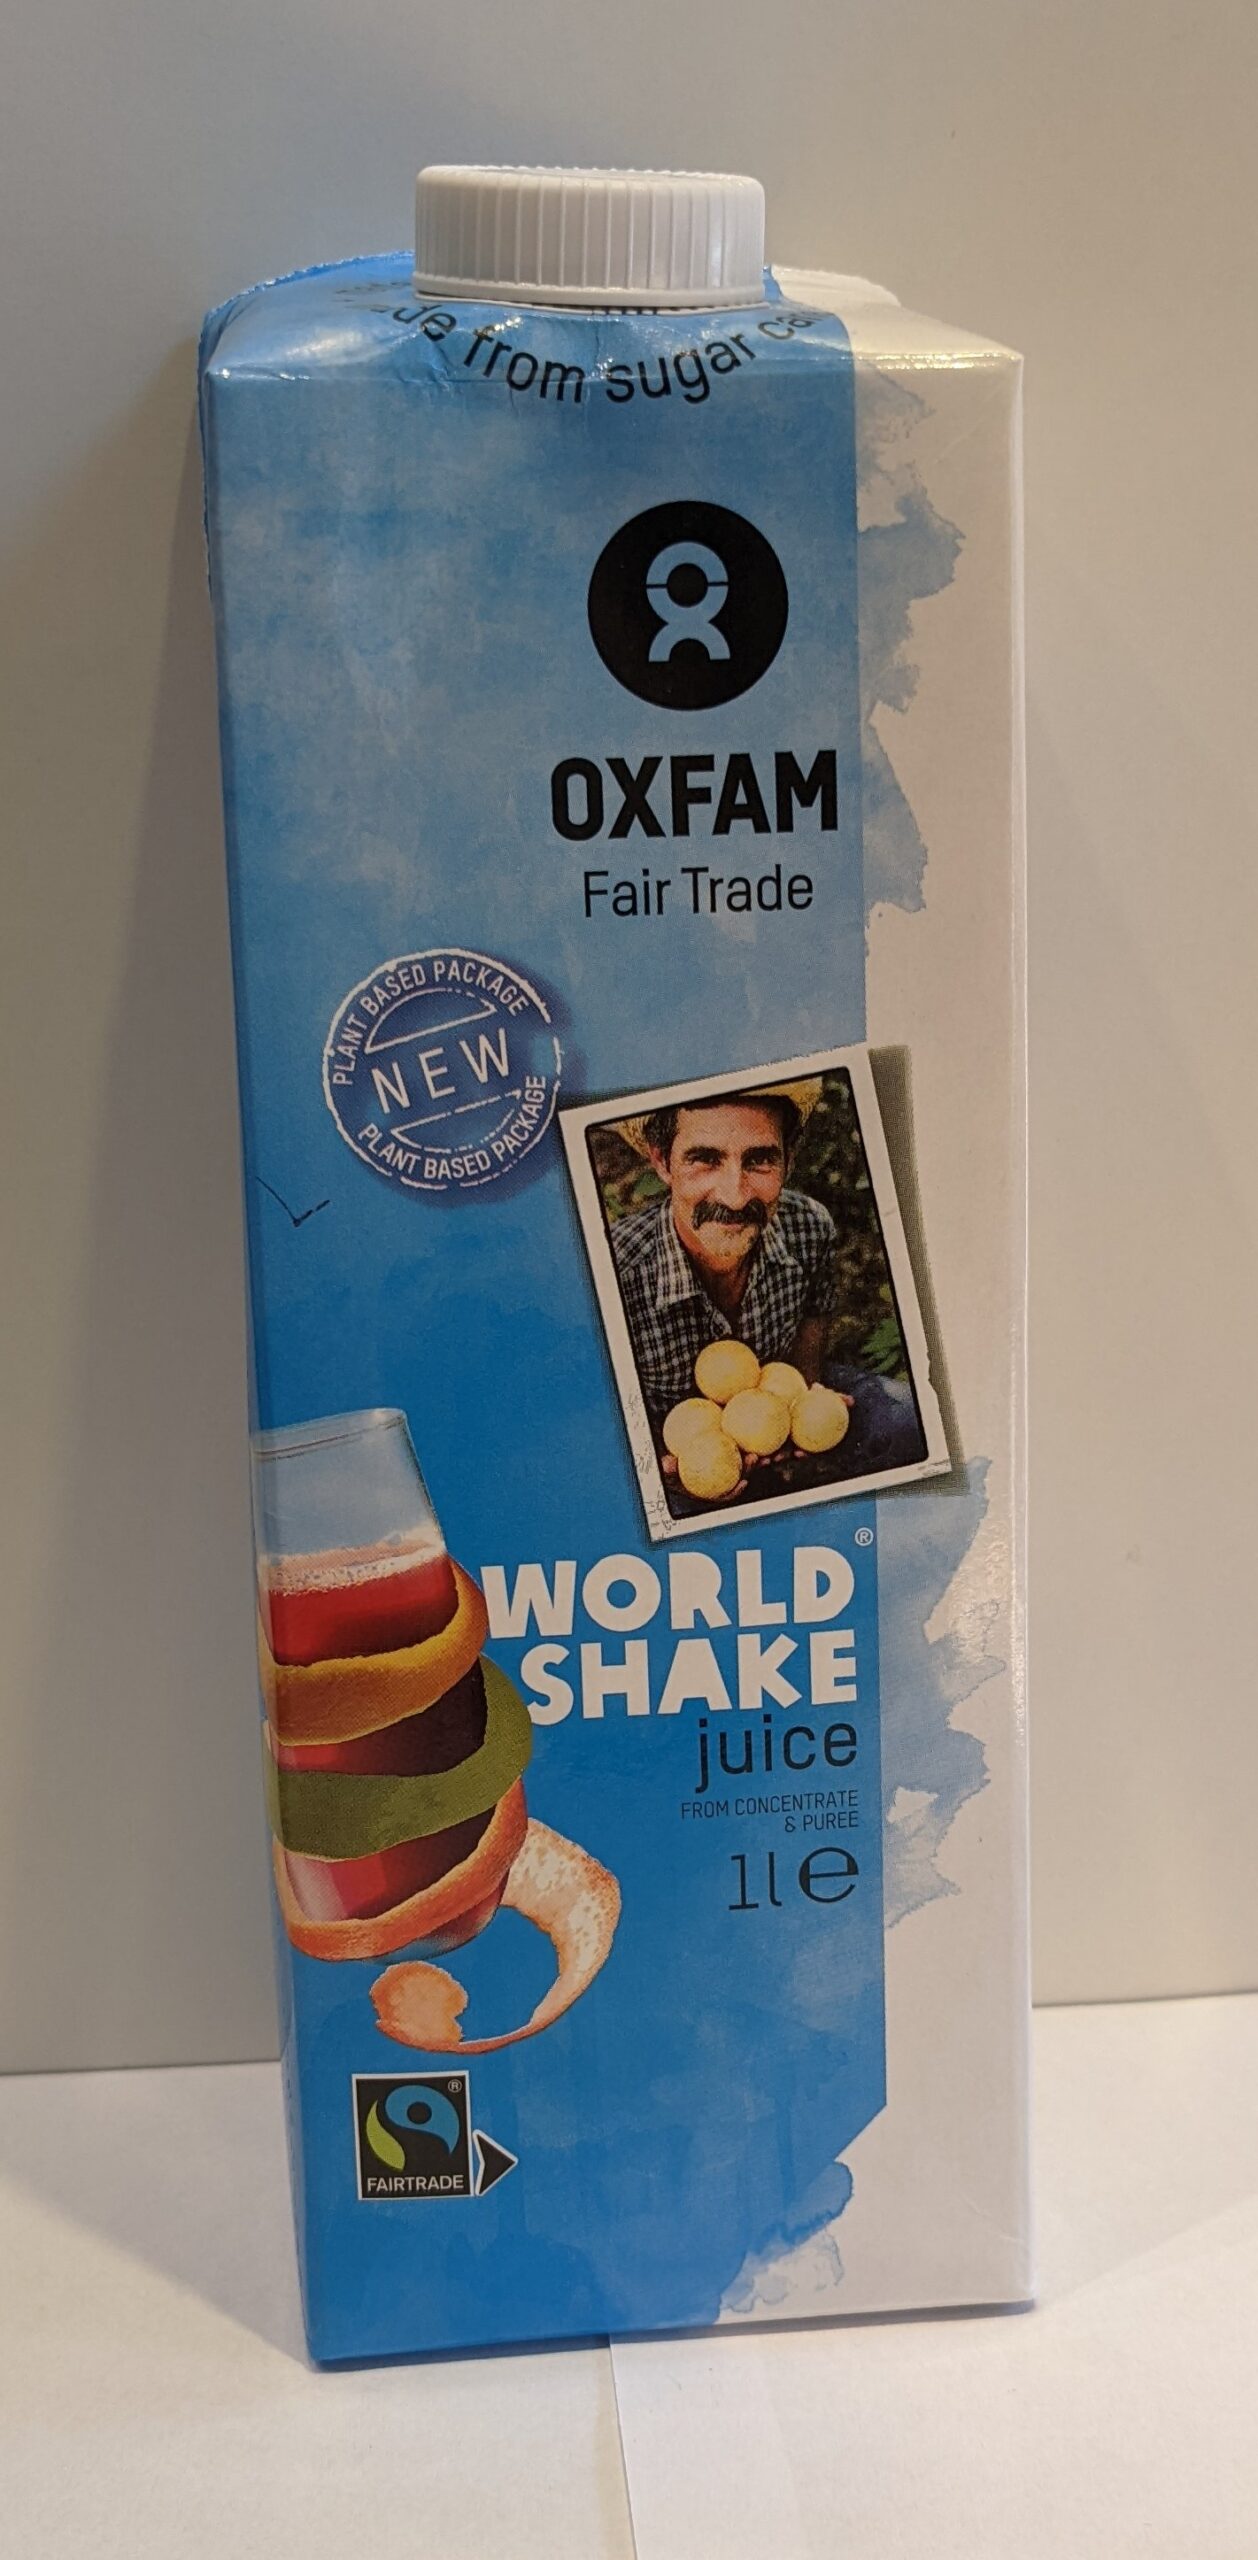 Multifruit, Oxfam